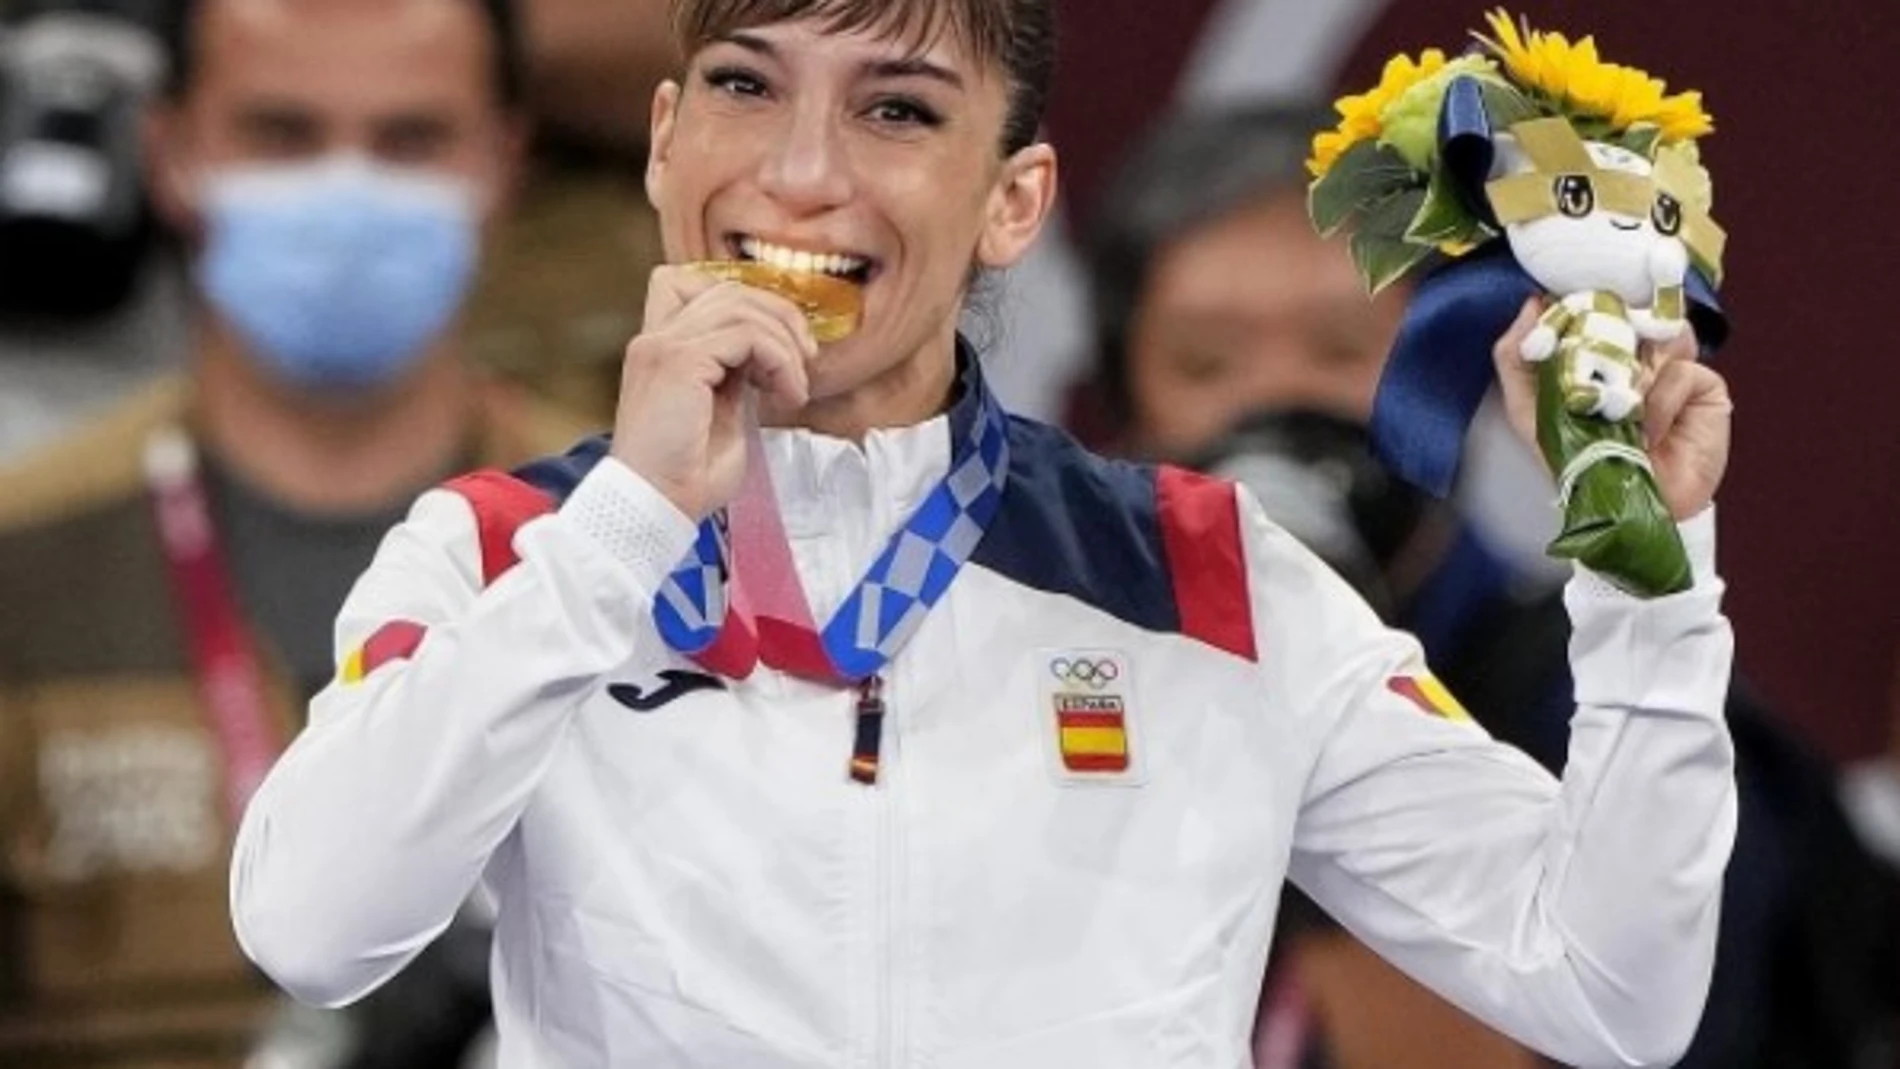 La medallista de oro en Kárate, Sandra Sánchez, será la única abanderada de España en la clausura de los JJOO en Tokio